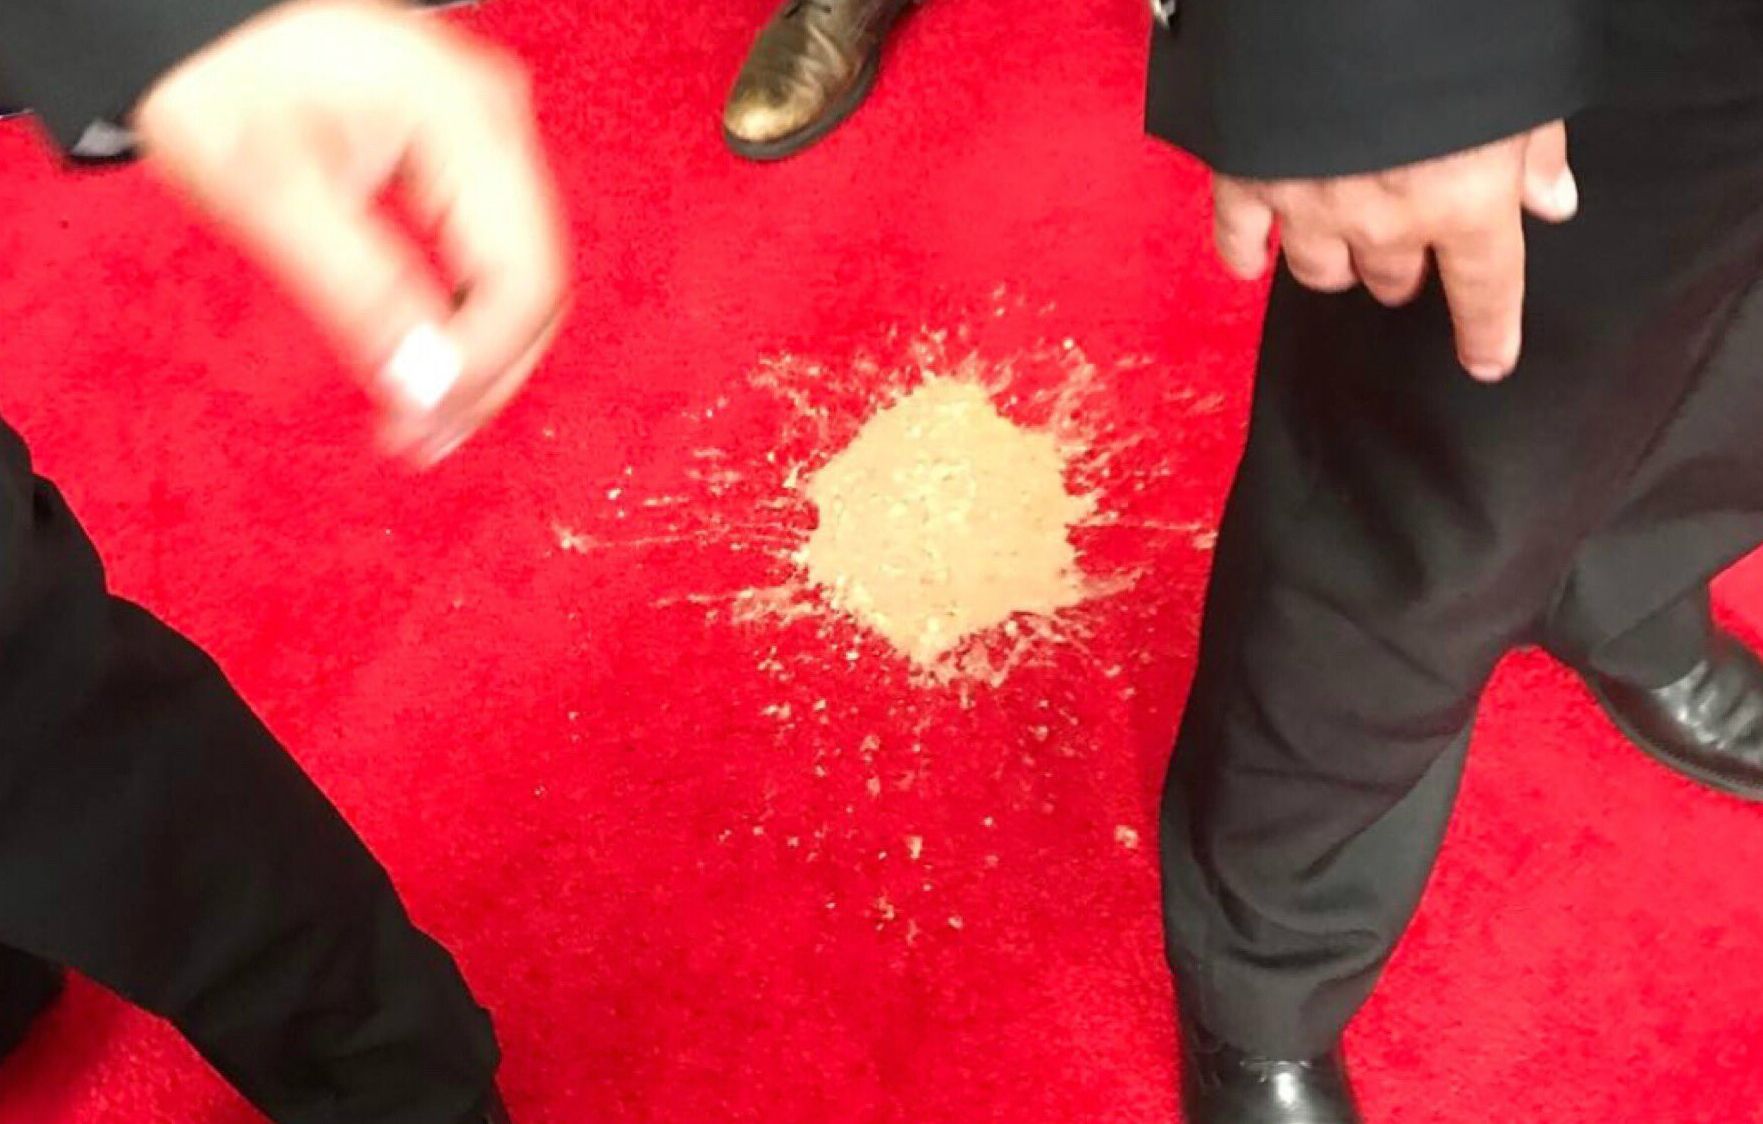 Emmys red carpet vomit